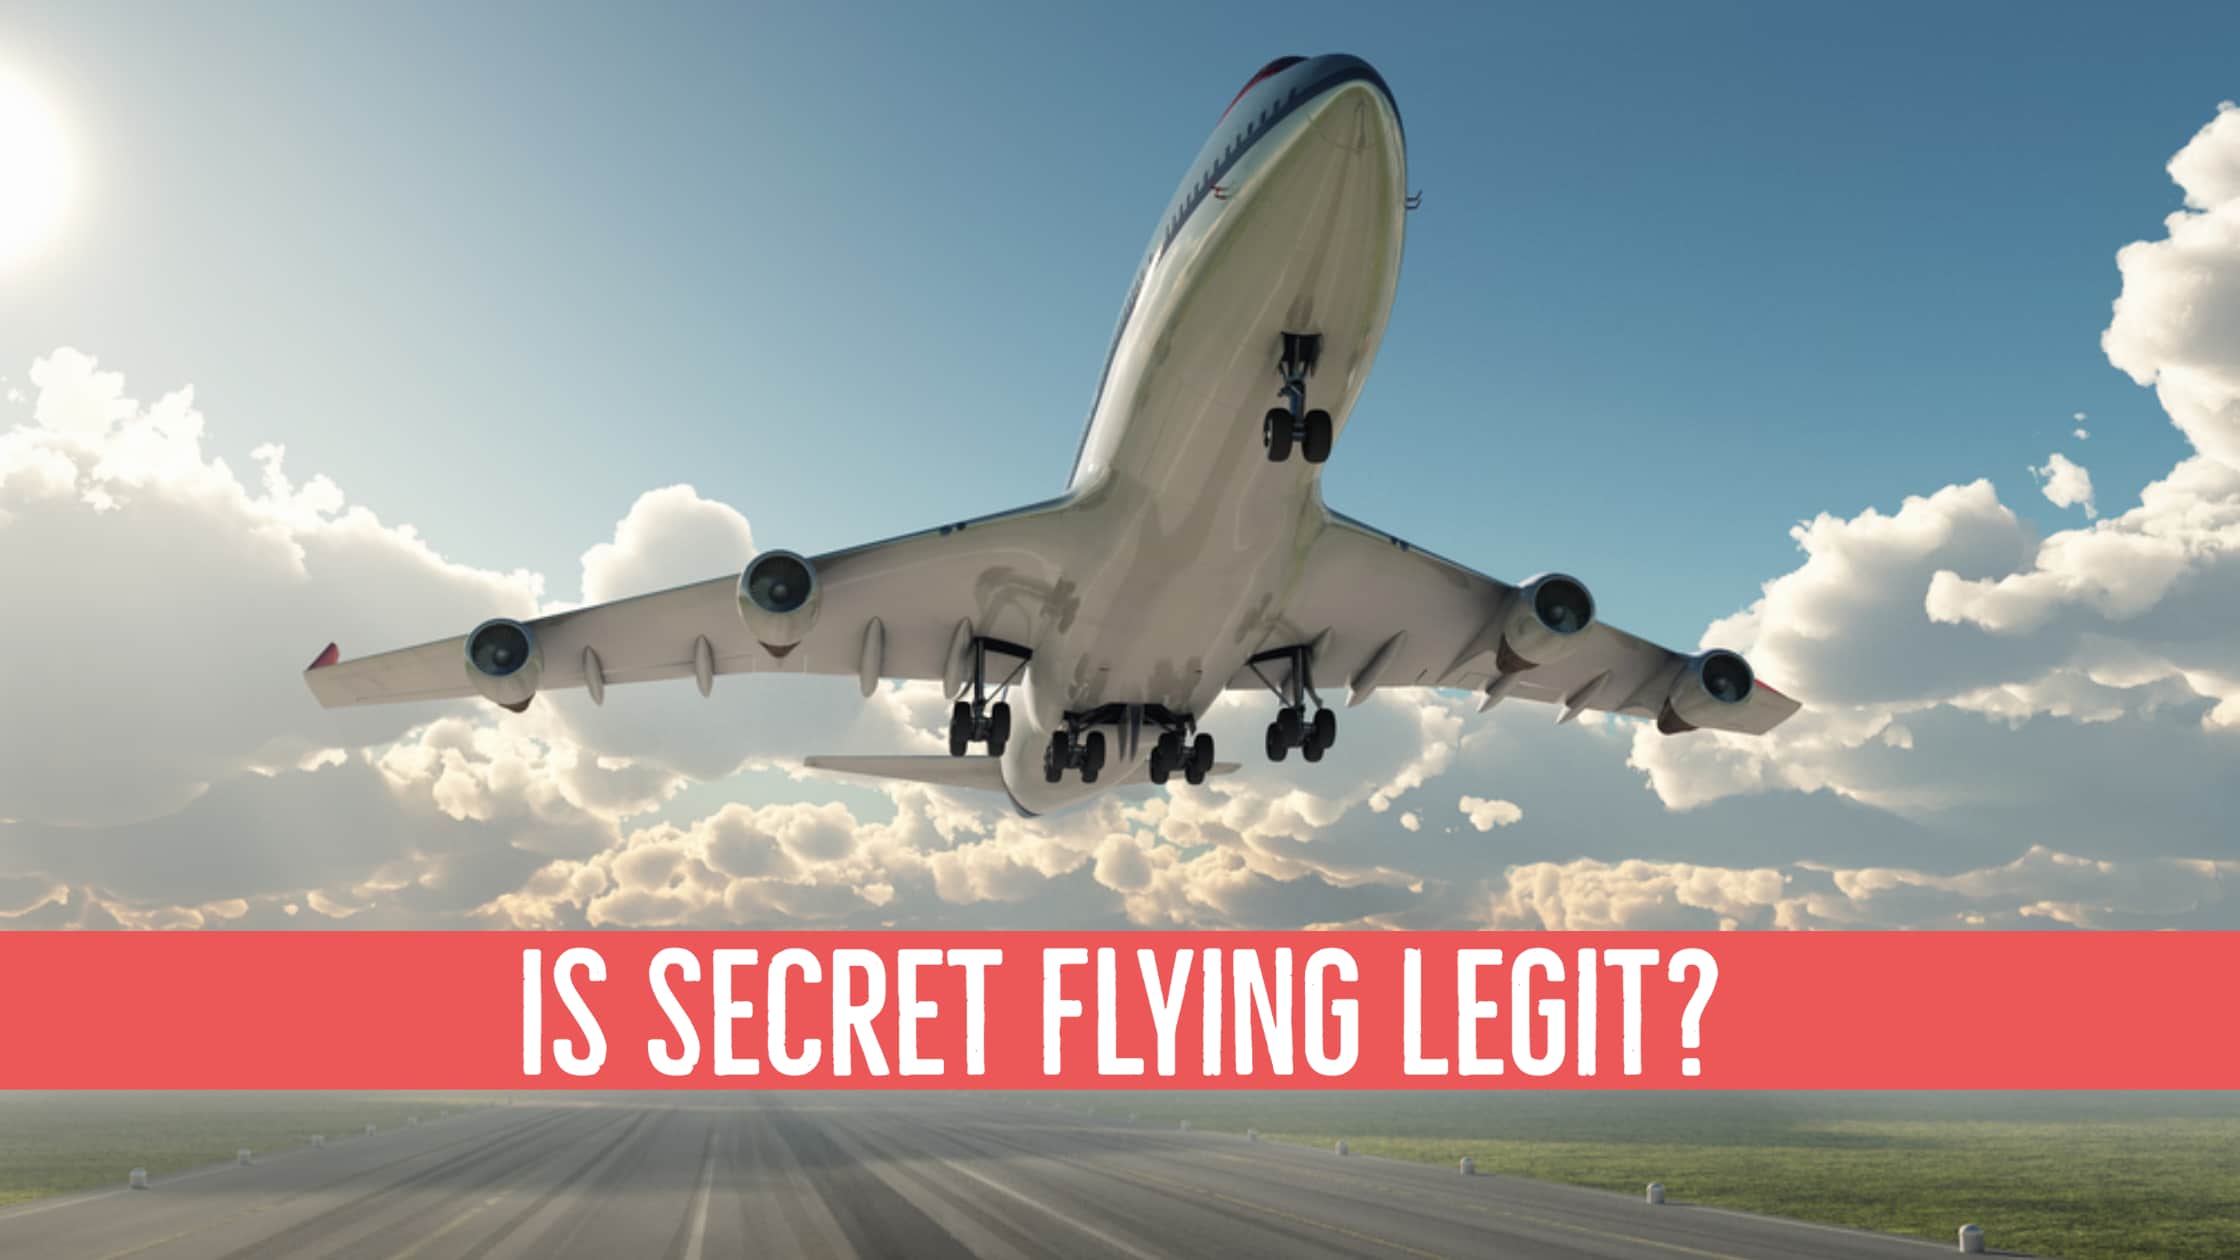 Secret Flying